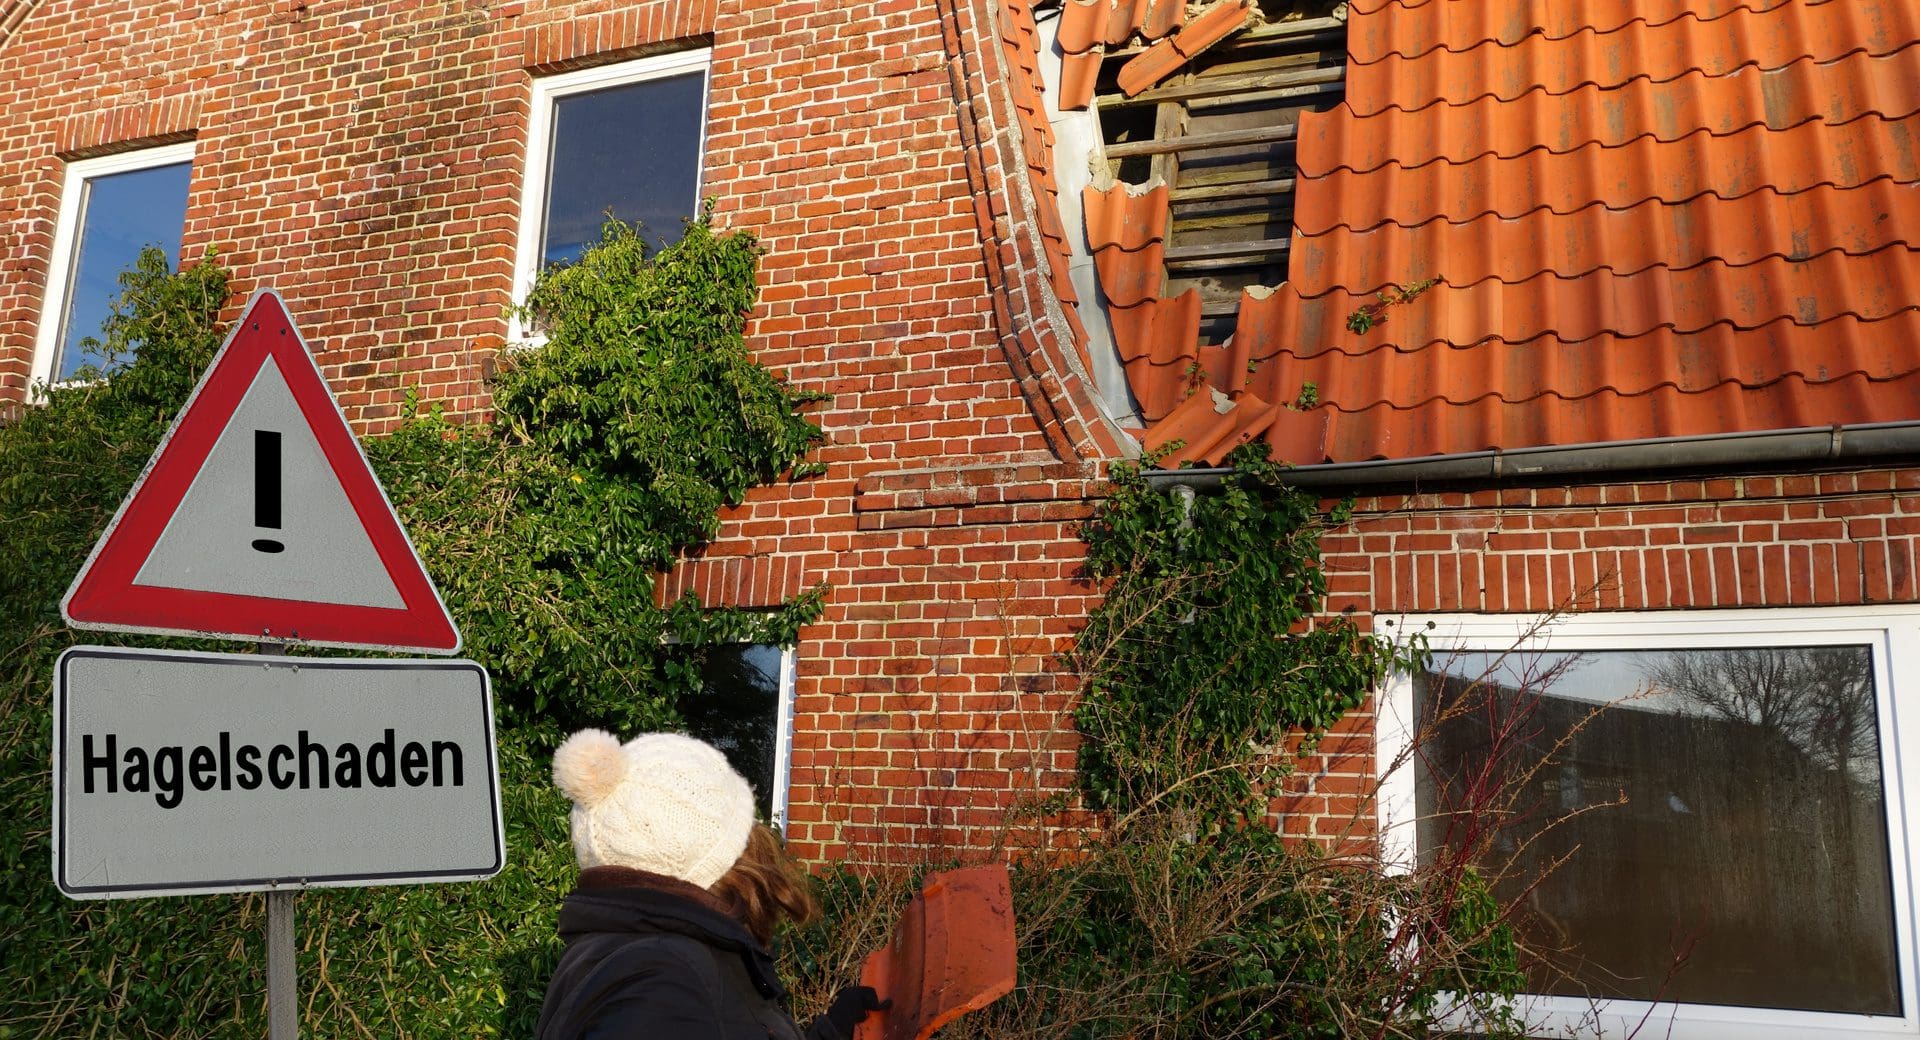 Hagelschaden! - Hagelschäden an Gebäuden mit der Versicherung regulieren (© pusteflower9024 / stock.adobe.com)